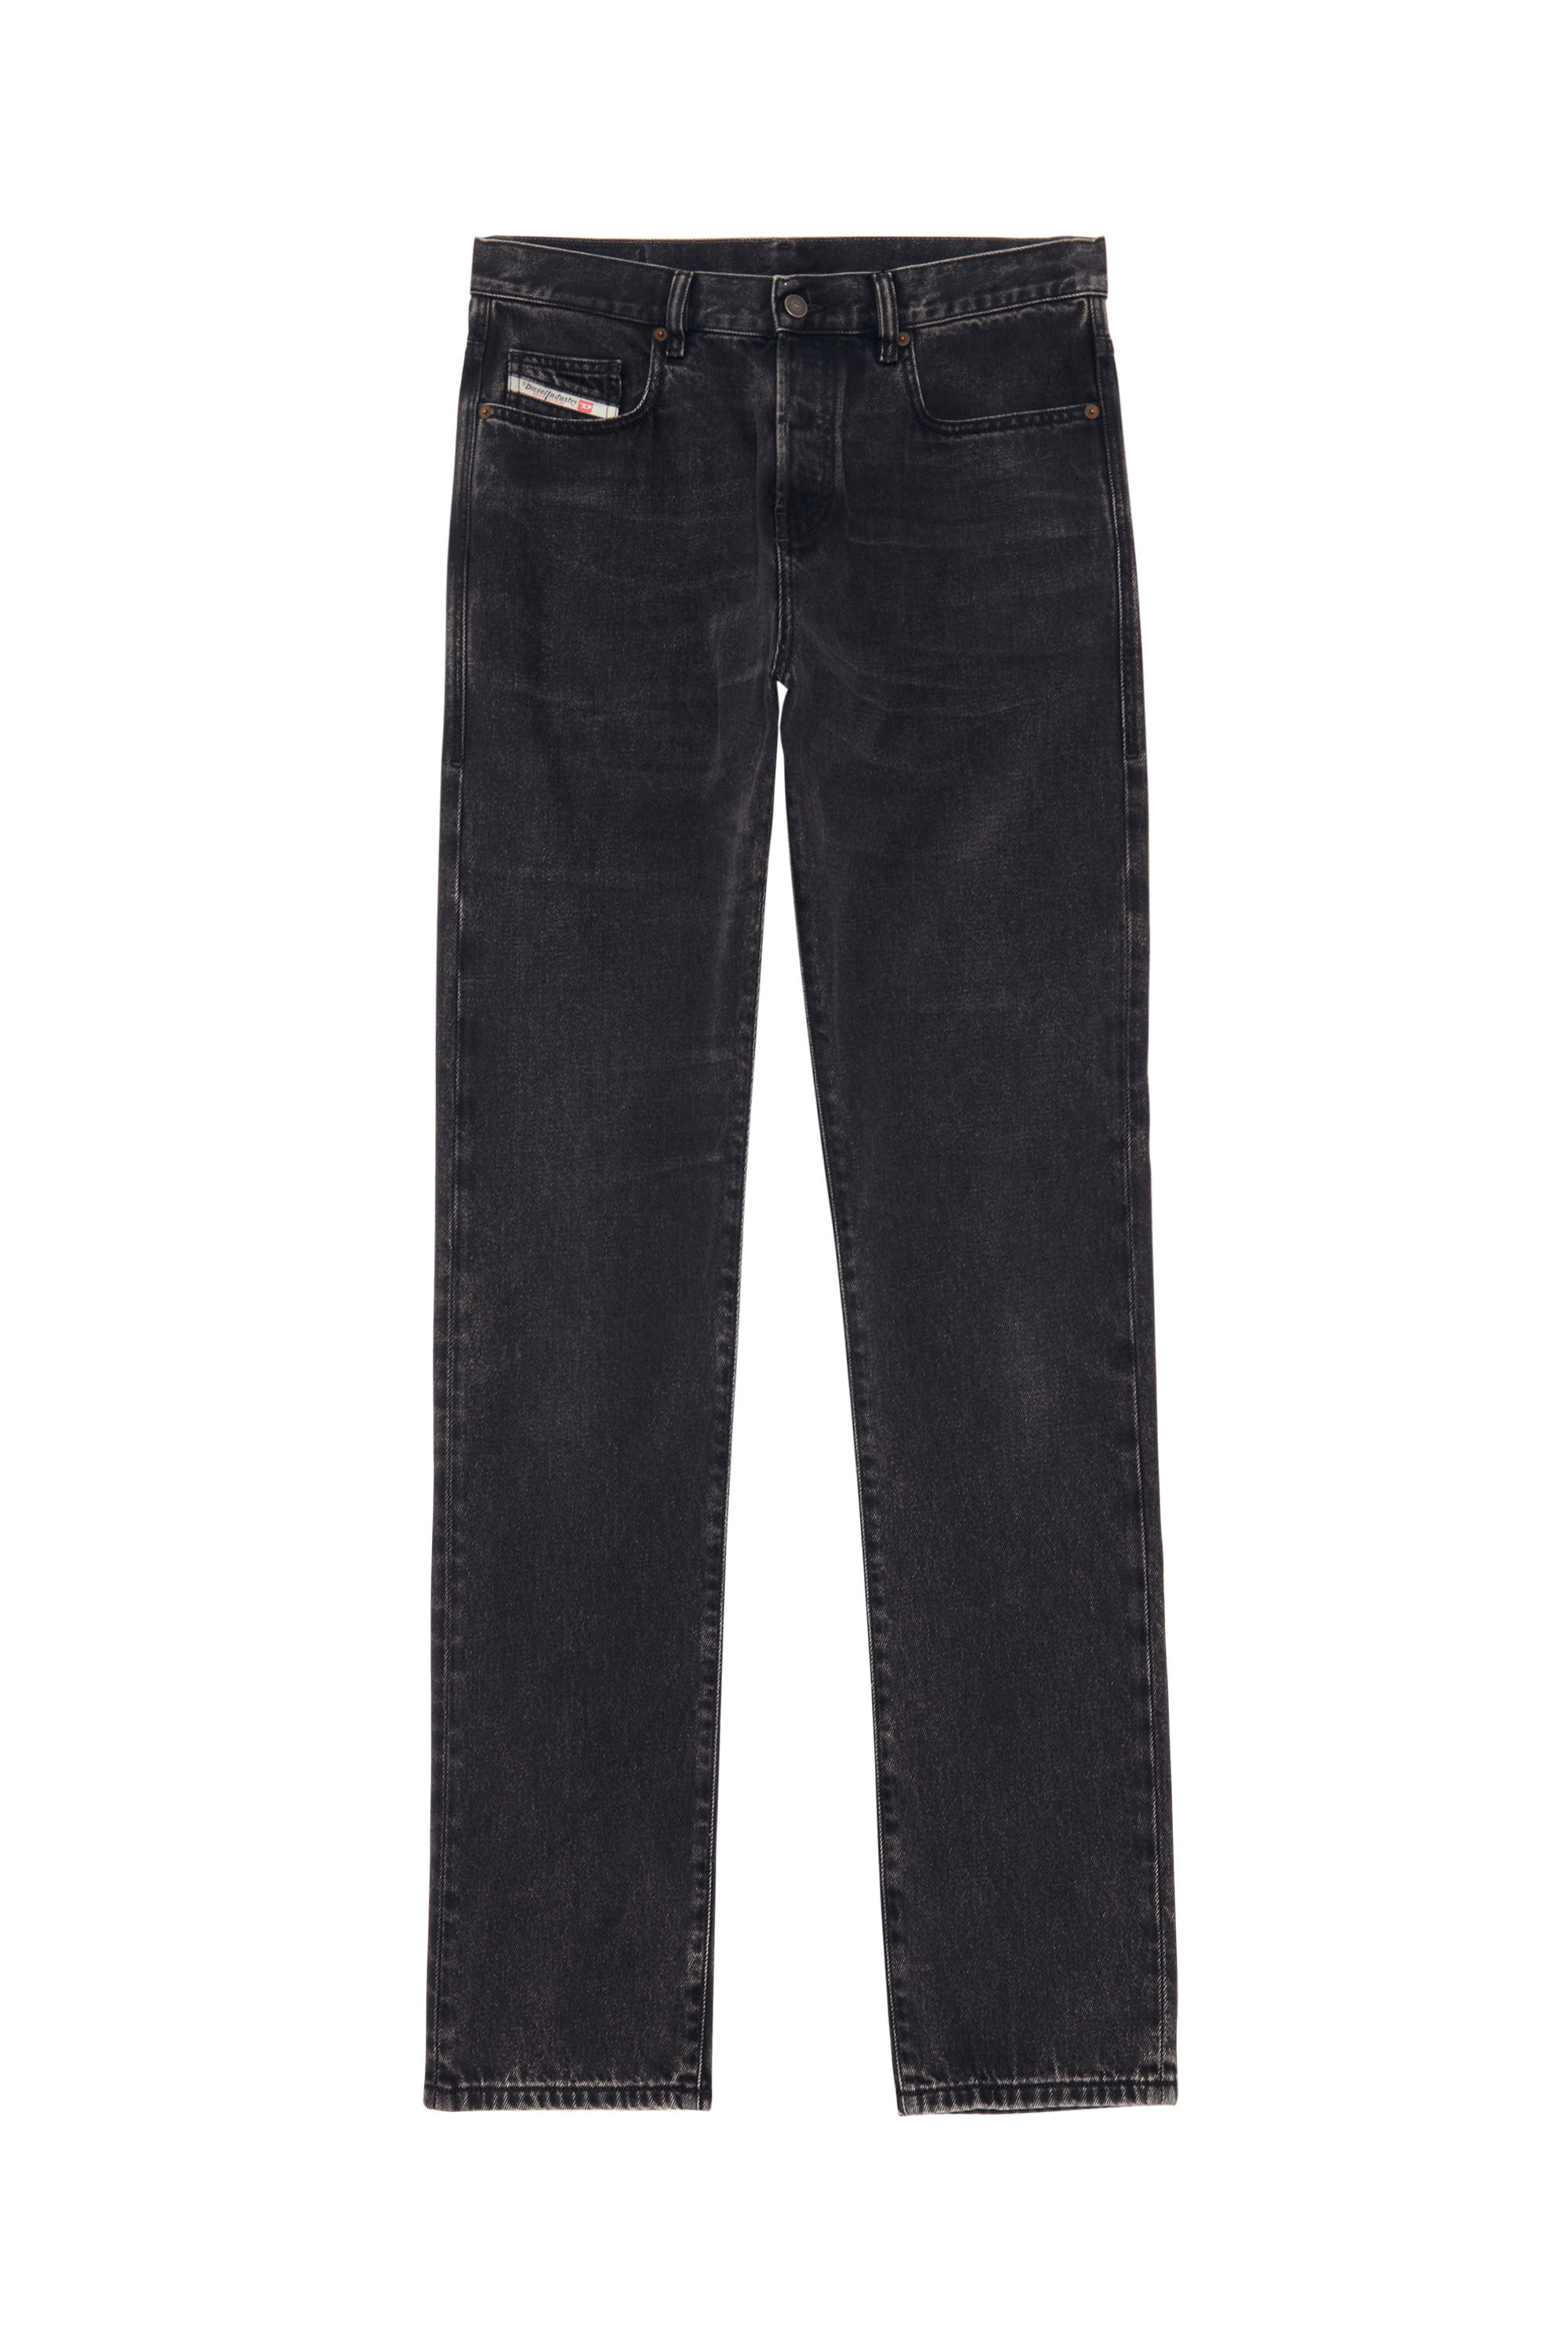 Diesel - Skinny Jeans 2015 Babhila Z870G,  - Image 3